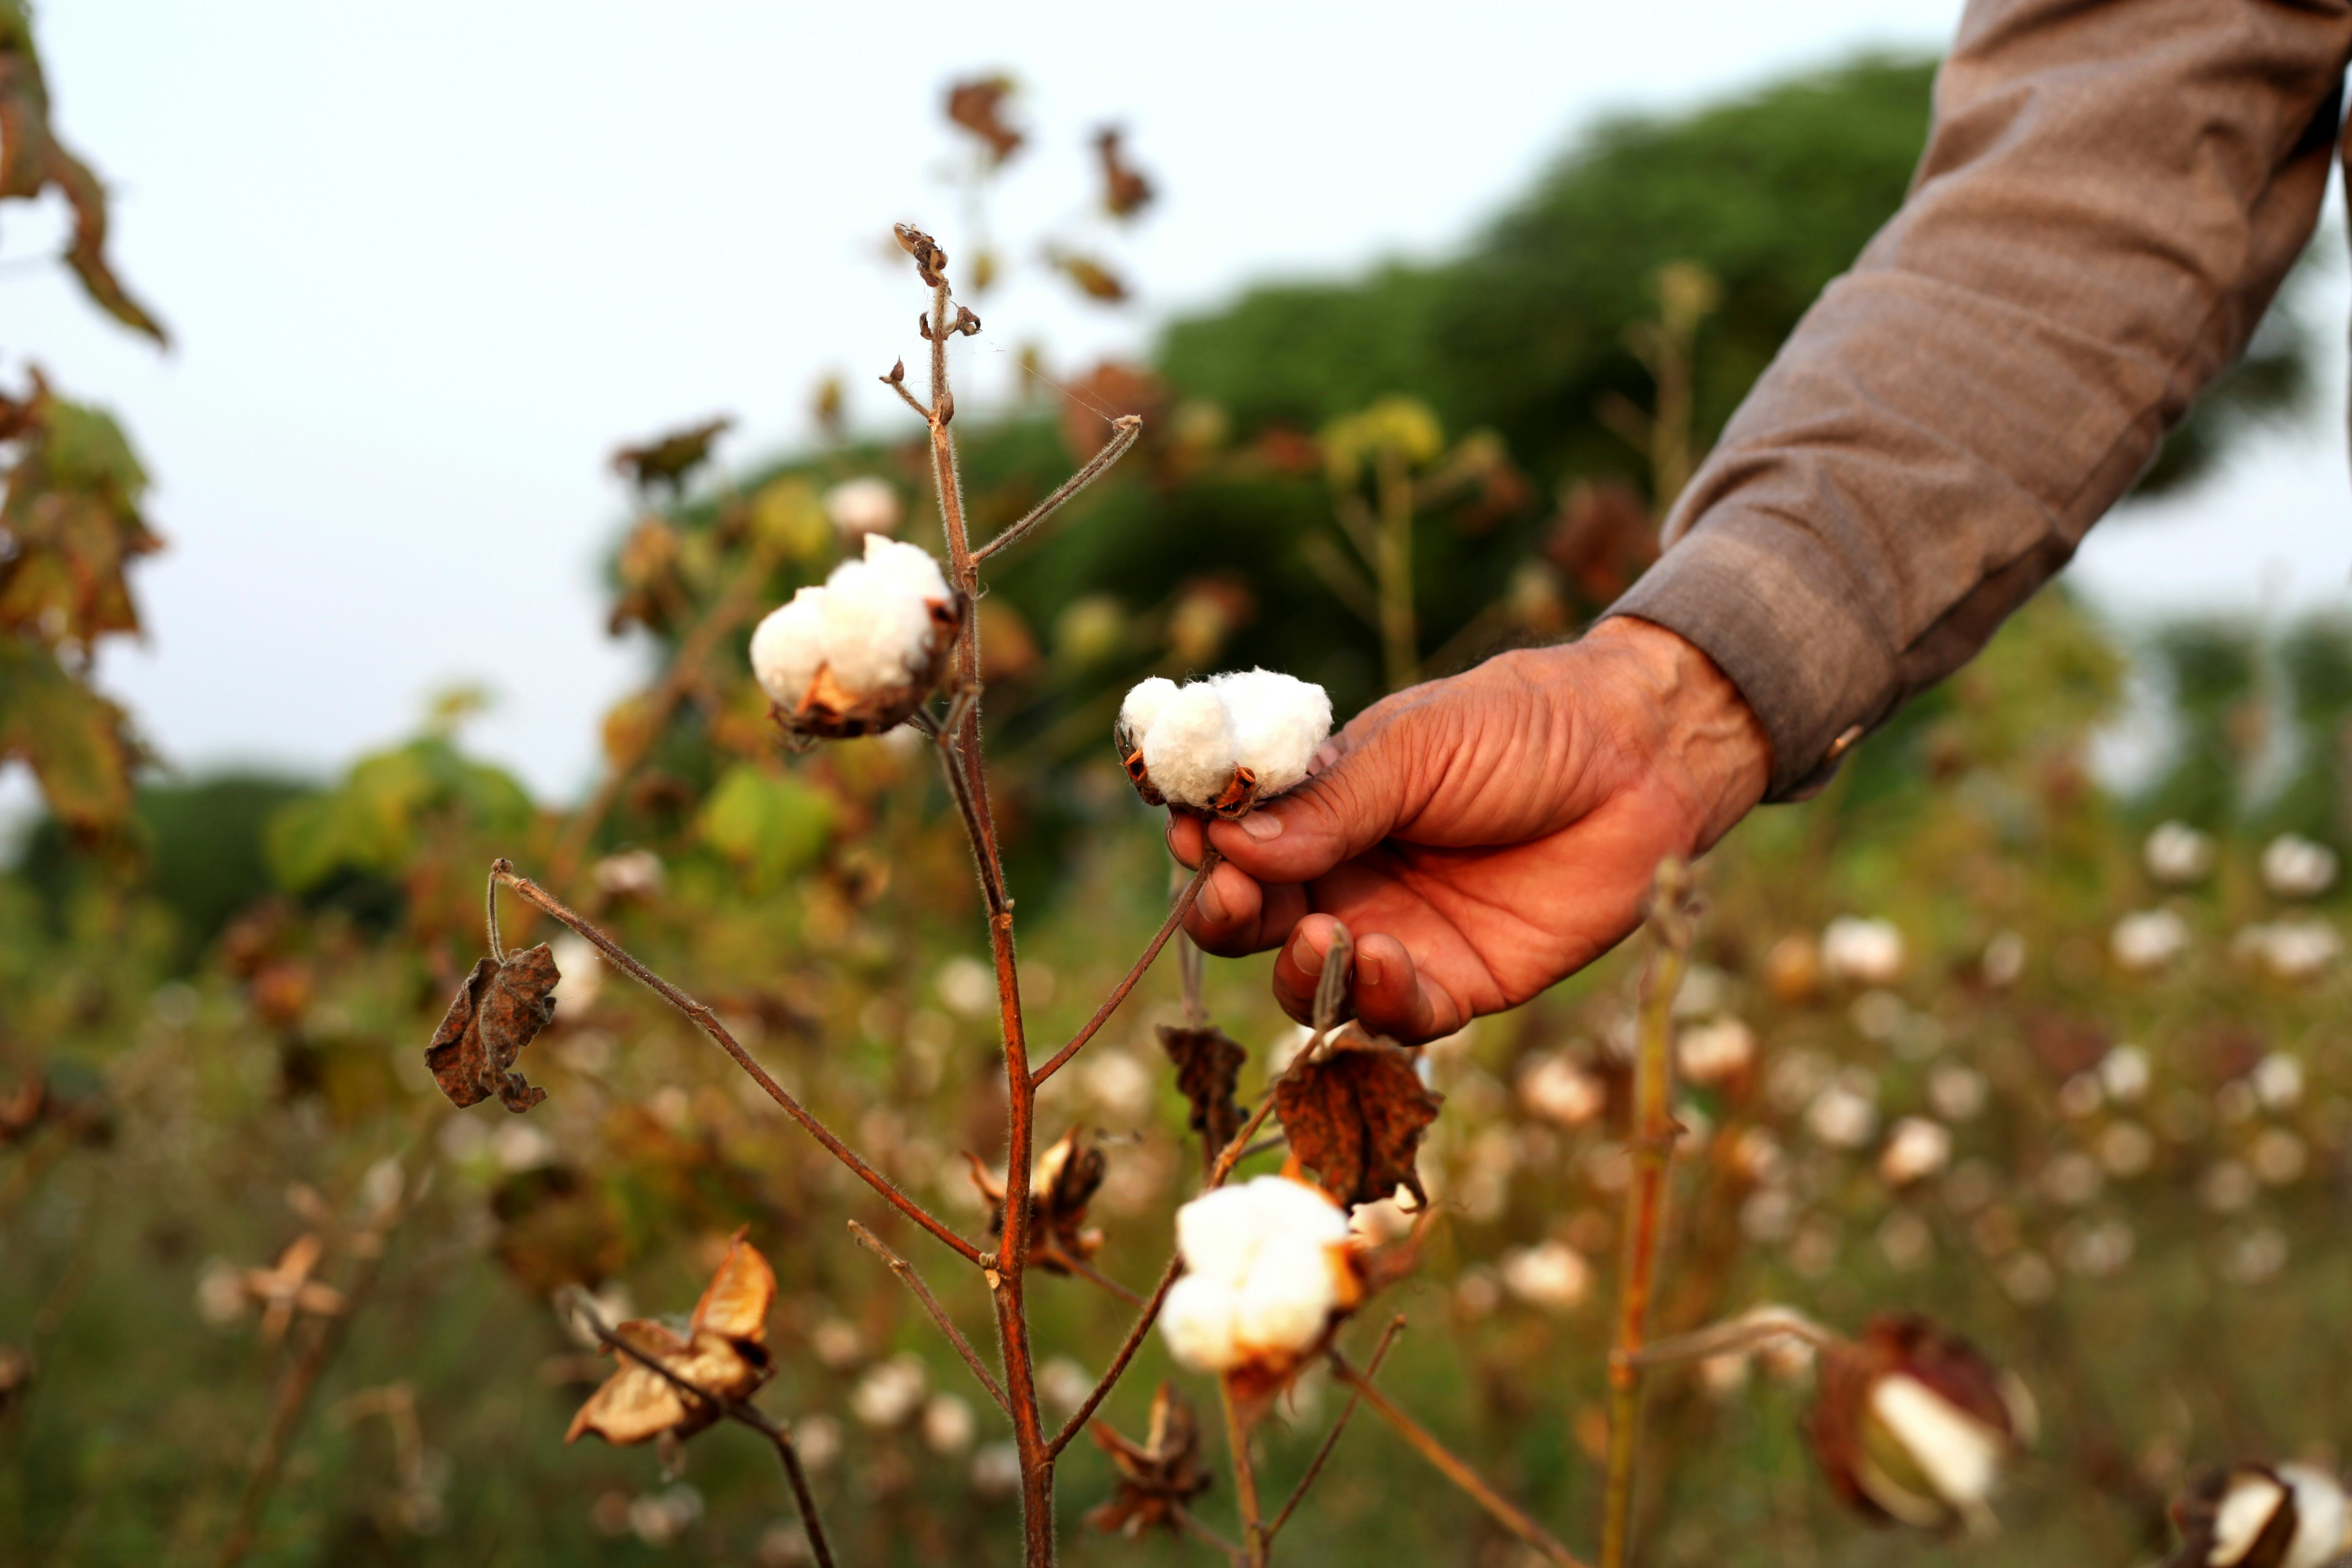 Cotton picking